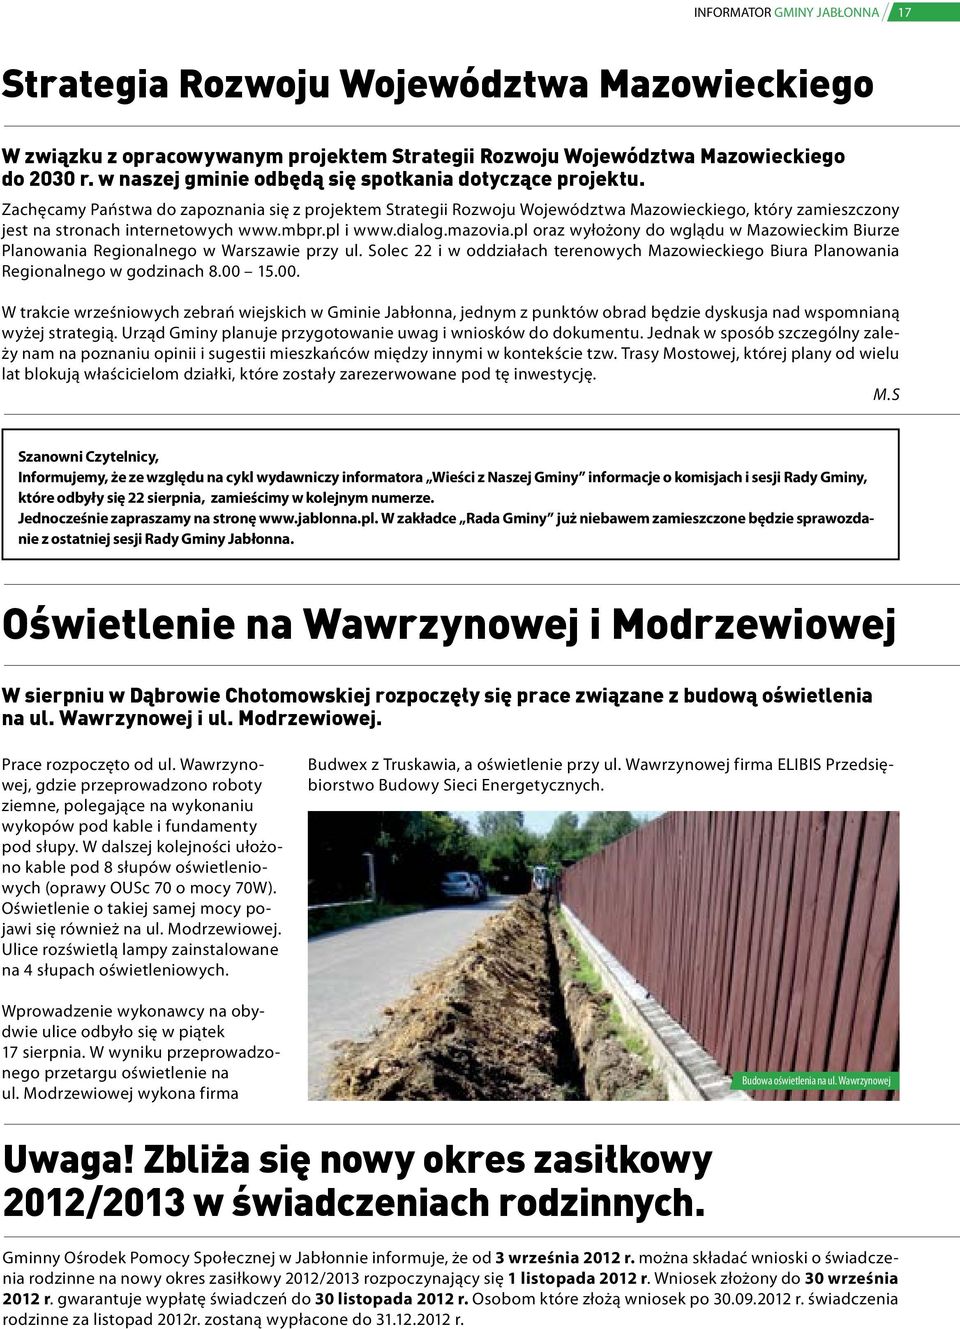 Zachęcamy Państwa do zapoznania się z projektem Strategii Rozwoju Województwa Mazowieckiego, który zamieszczony jest na stronach internetowych www.mbpr.pl i www.dialog.mazovia.